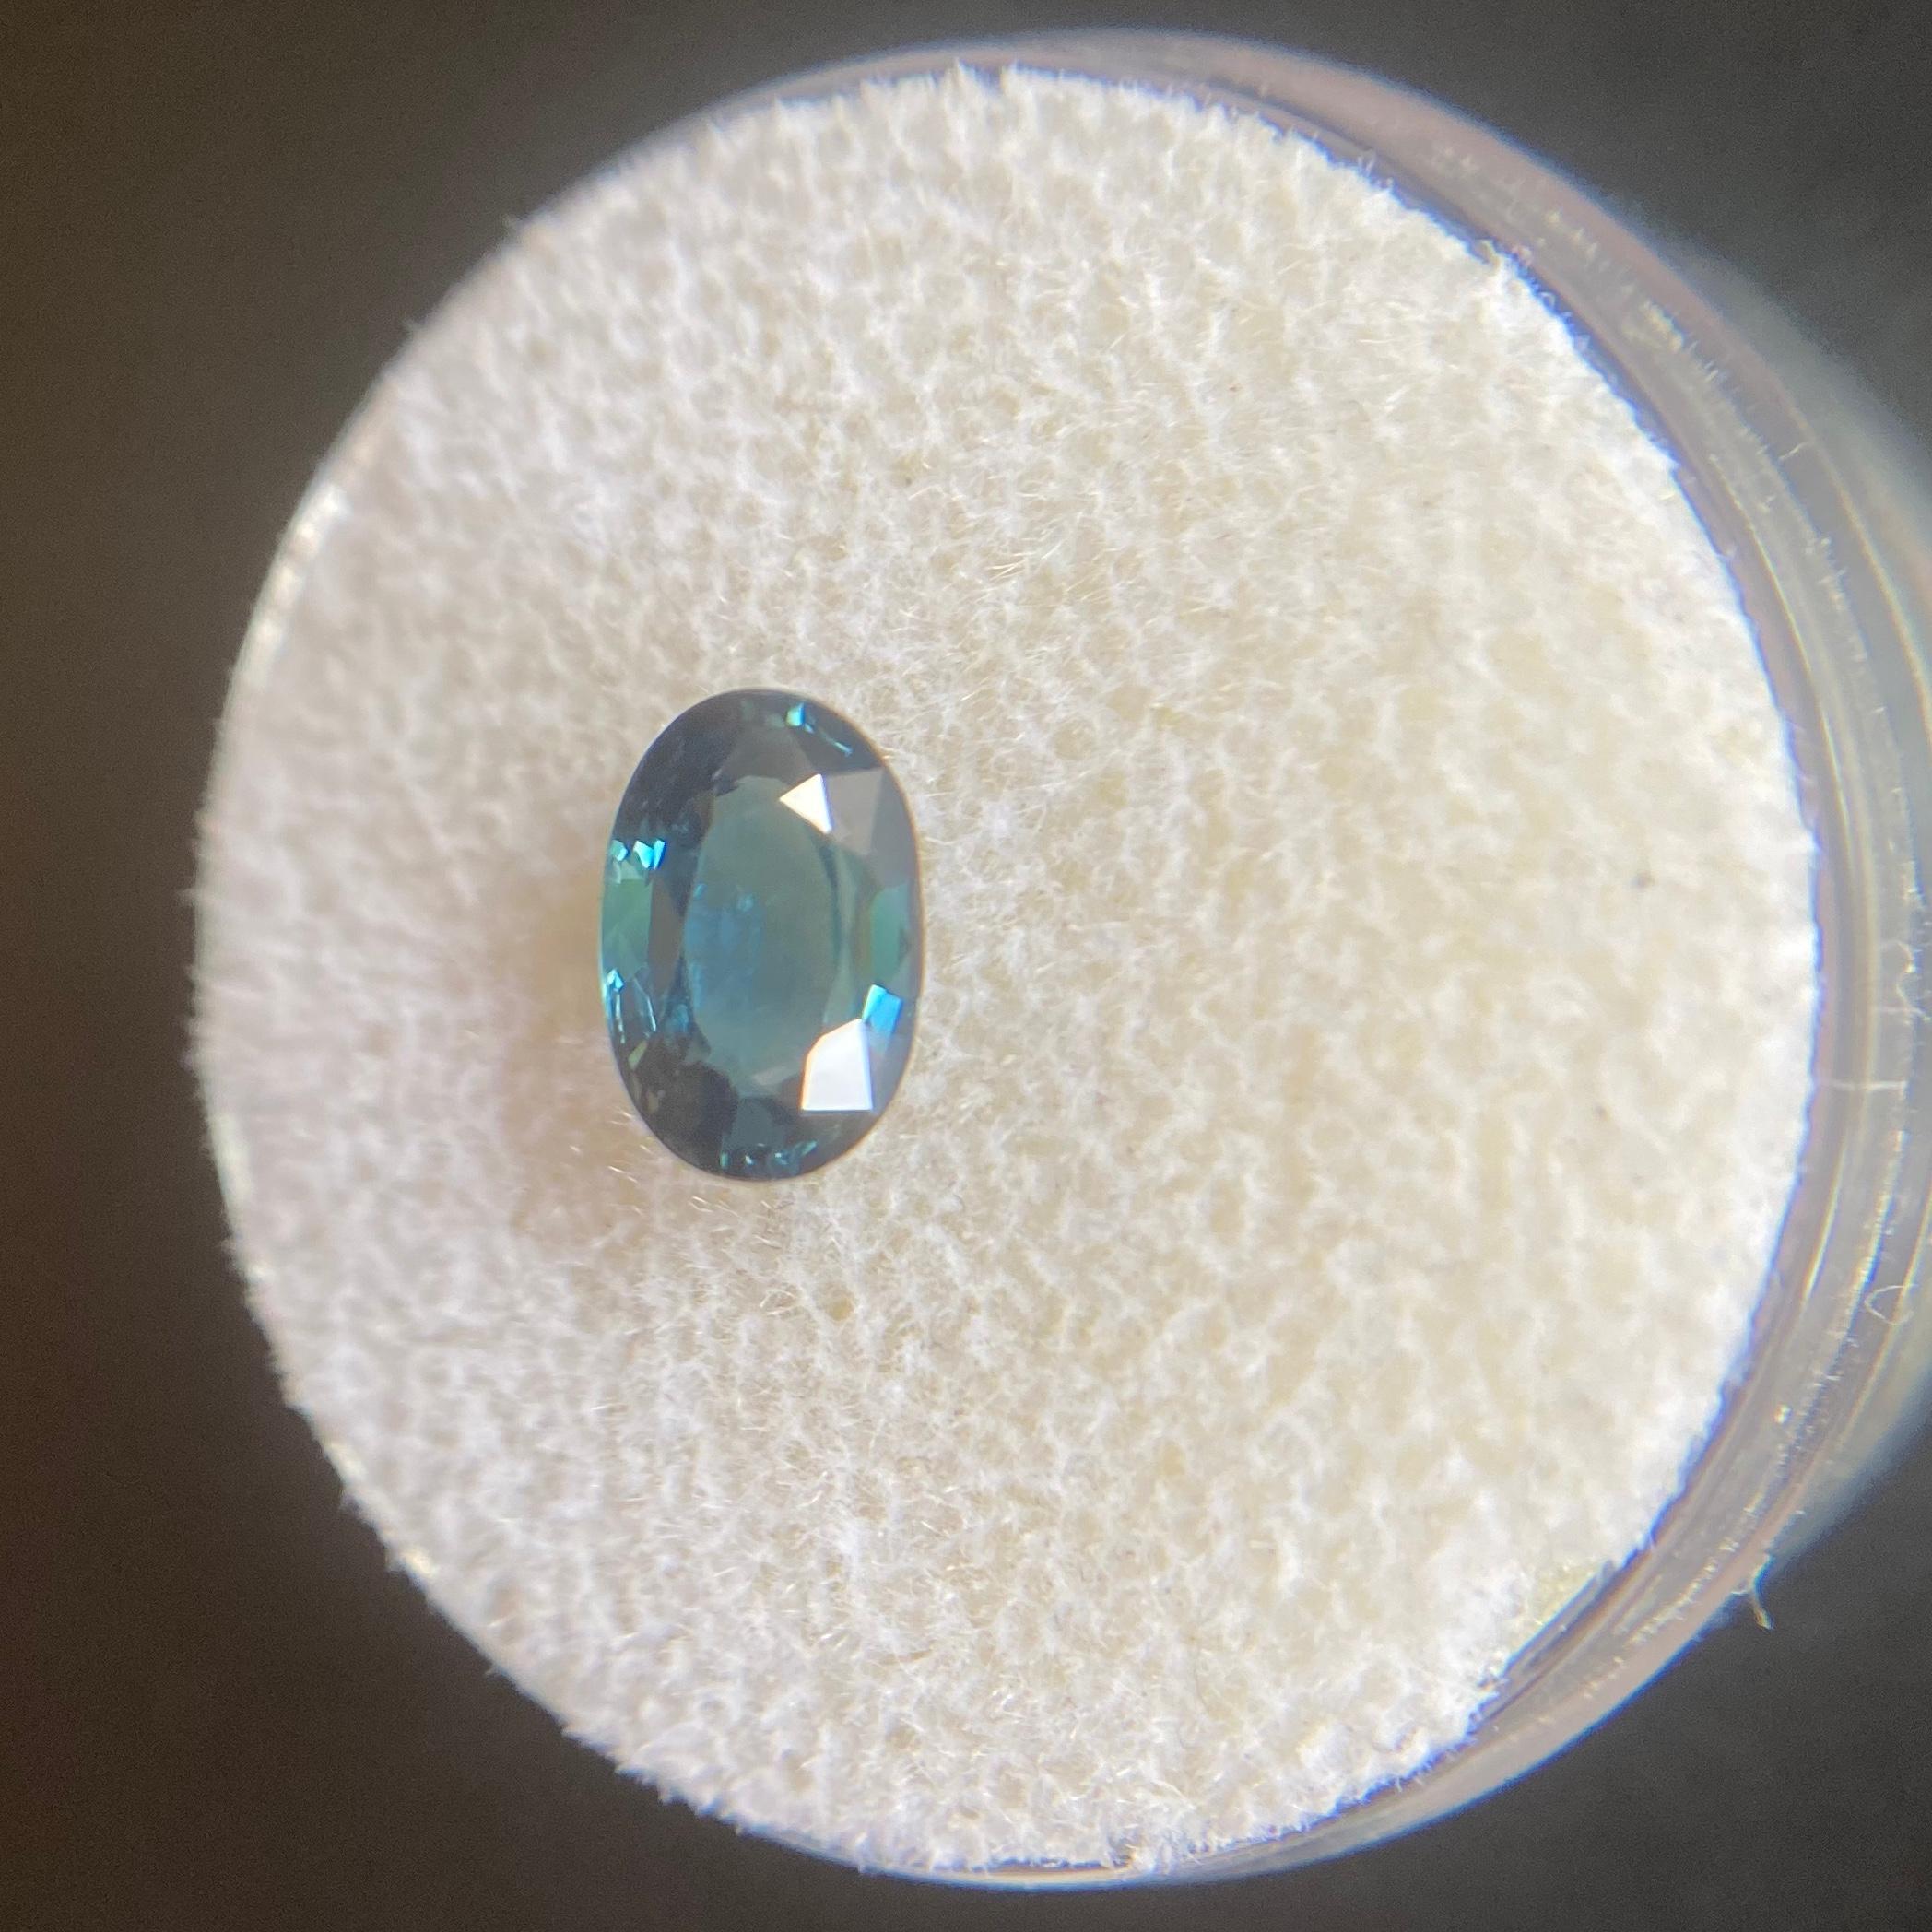 blue sapphire thailand